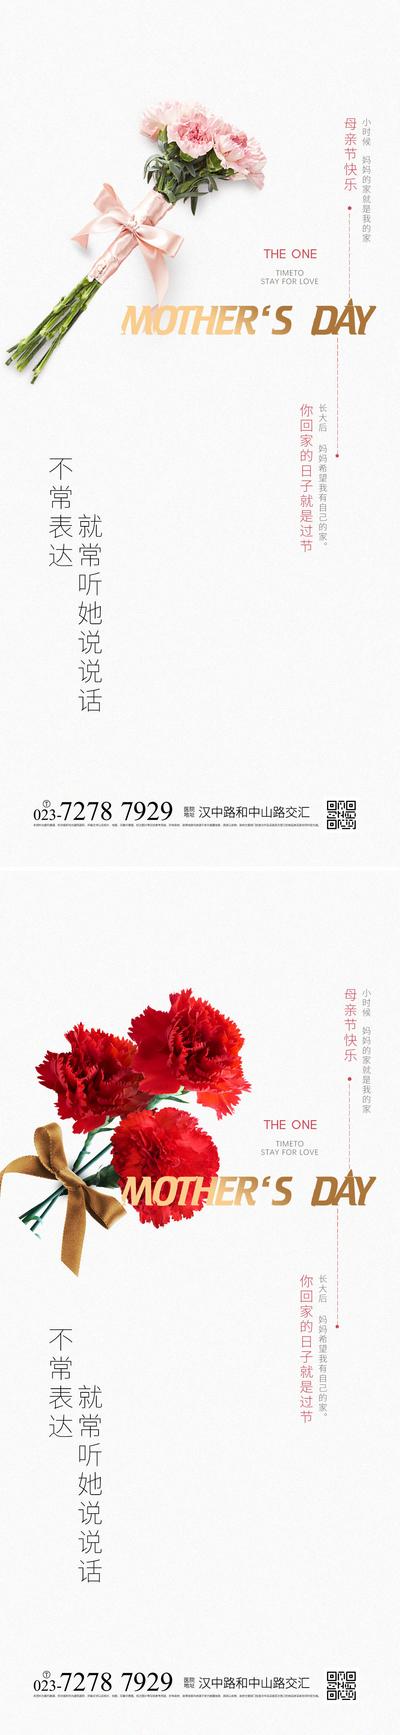 南门网 广告 海报 节日 母亲节 鲜花 简约 品质